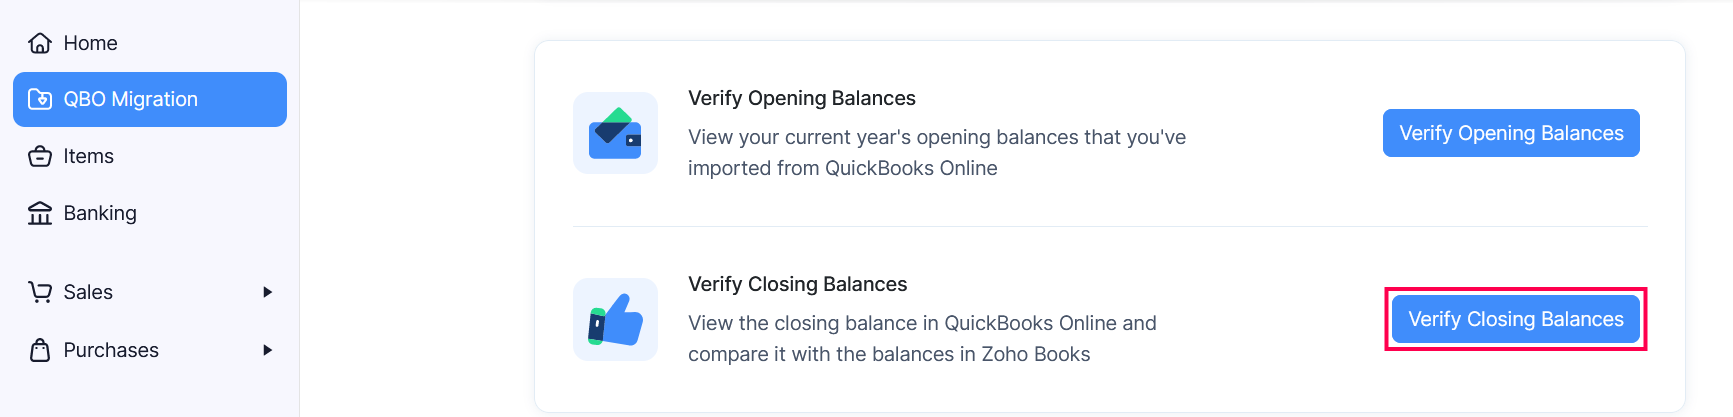 Verify Closing Balances